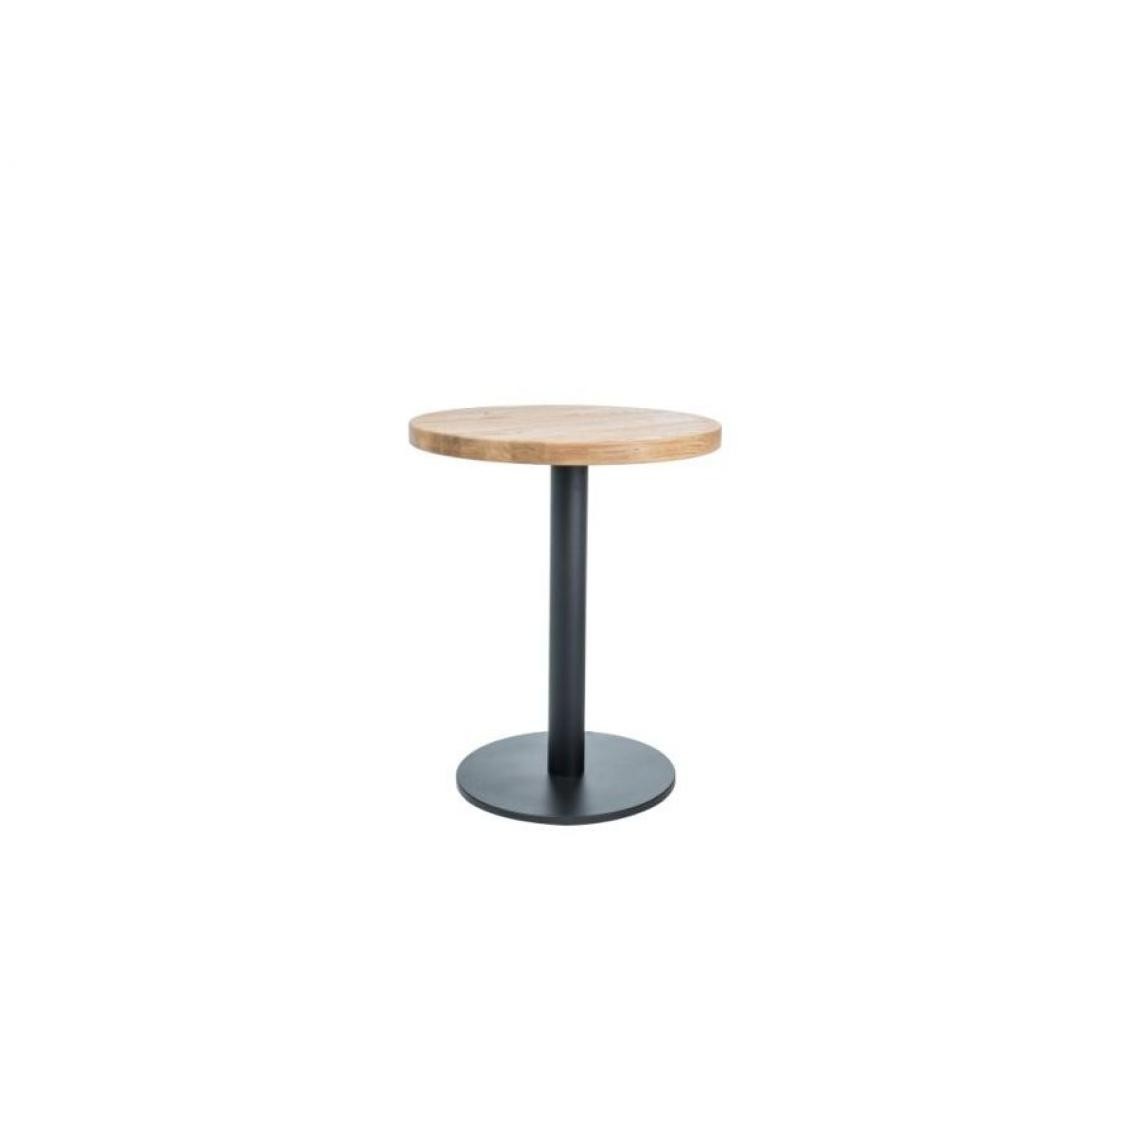 Hucoco - PURA - Table ronde avec un piètement en métal - 60x60x76 cm - Plateau en bois massif - Table fixe - Style loft - Chêne - Tables à manger